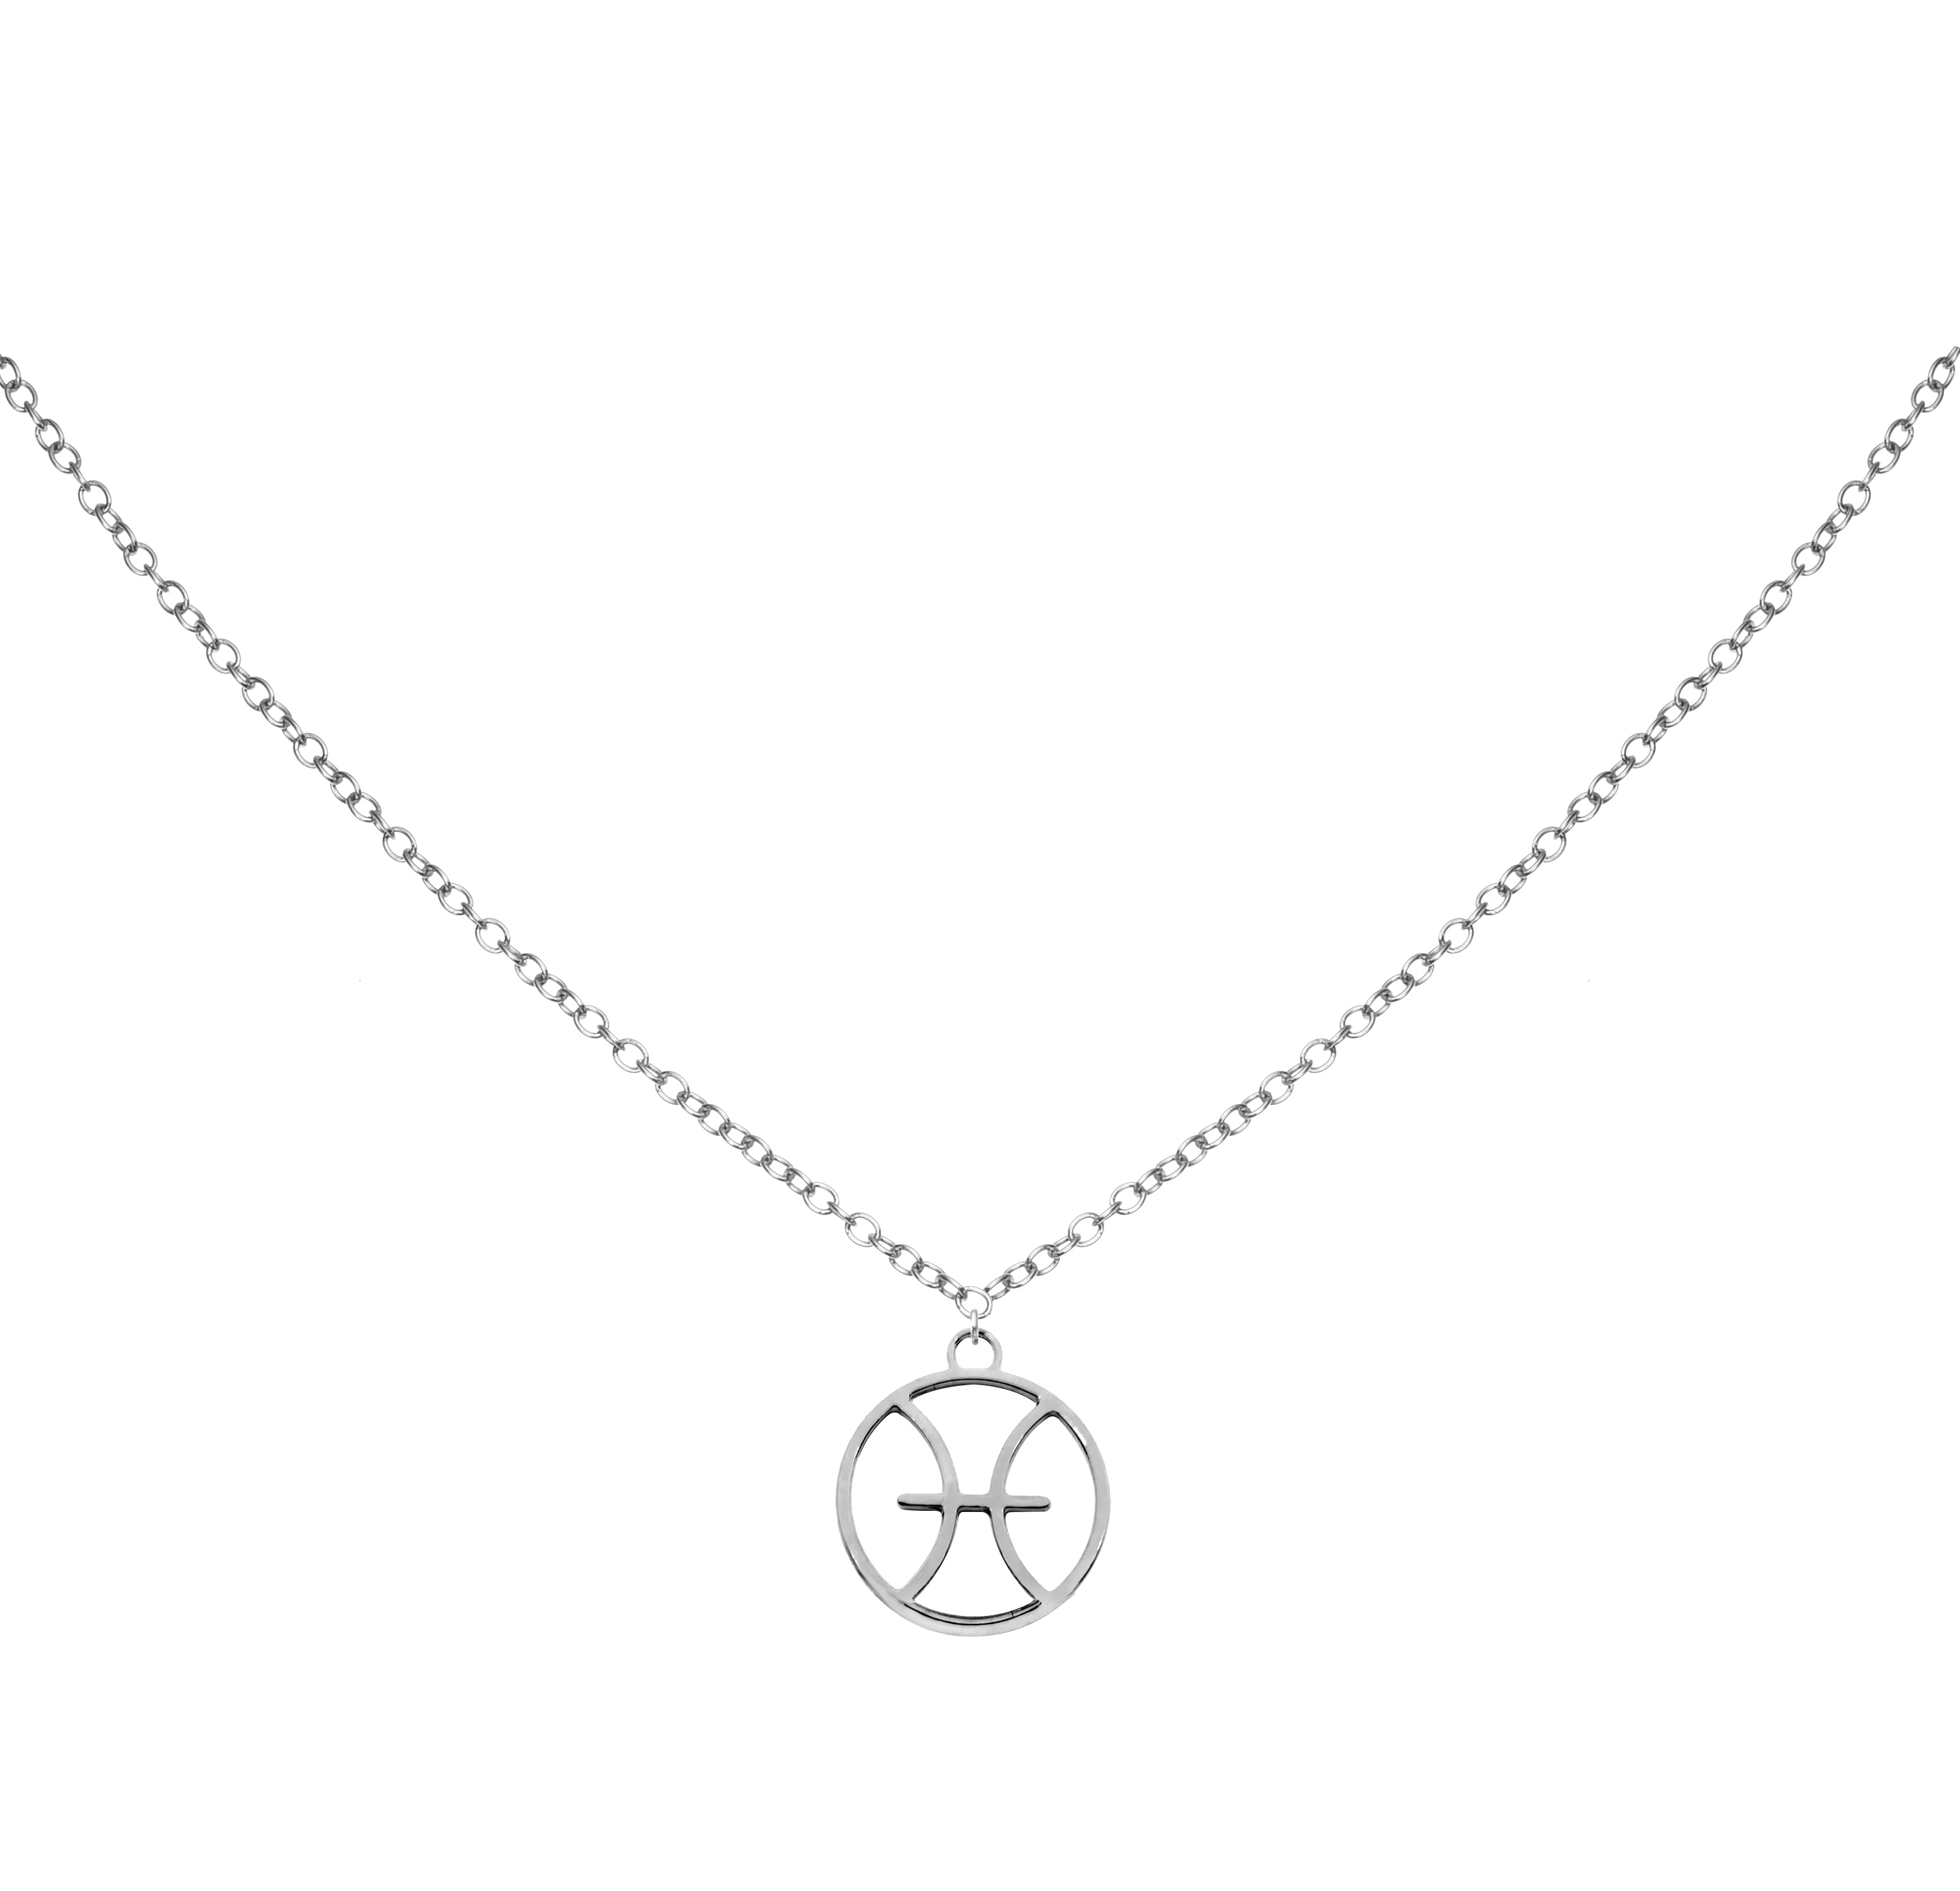 Pisces Necklace - Zodiac Sign Necklace